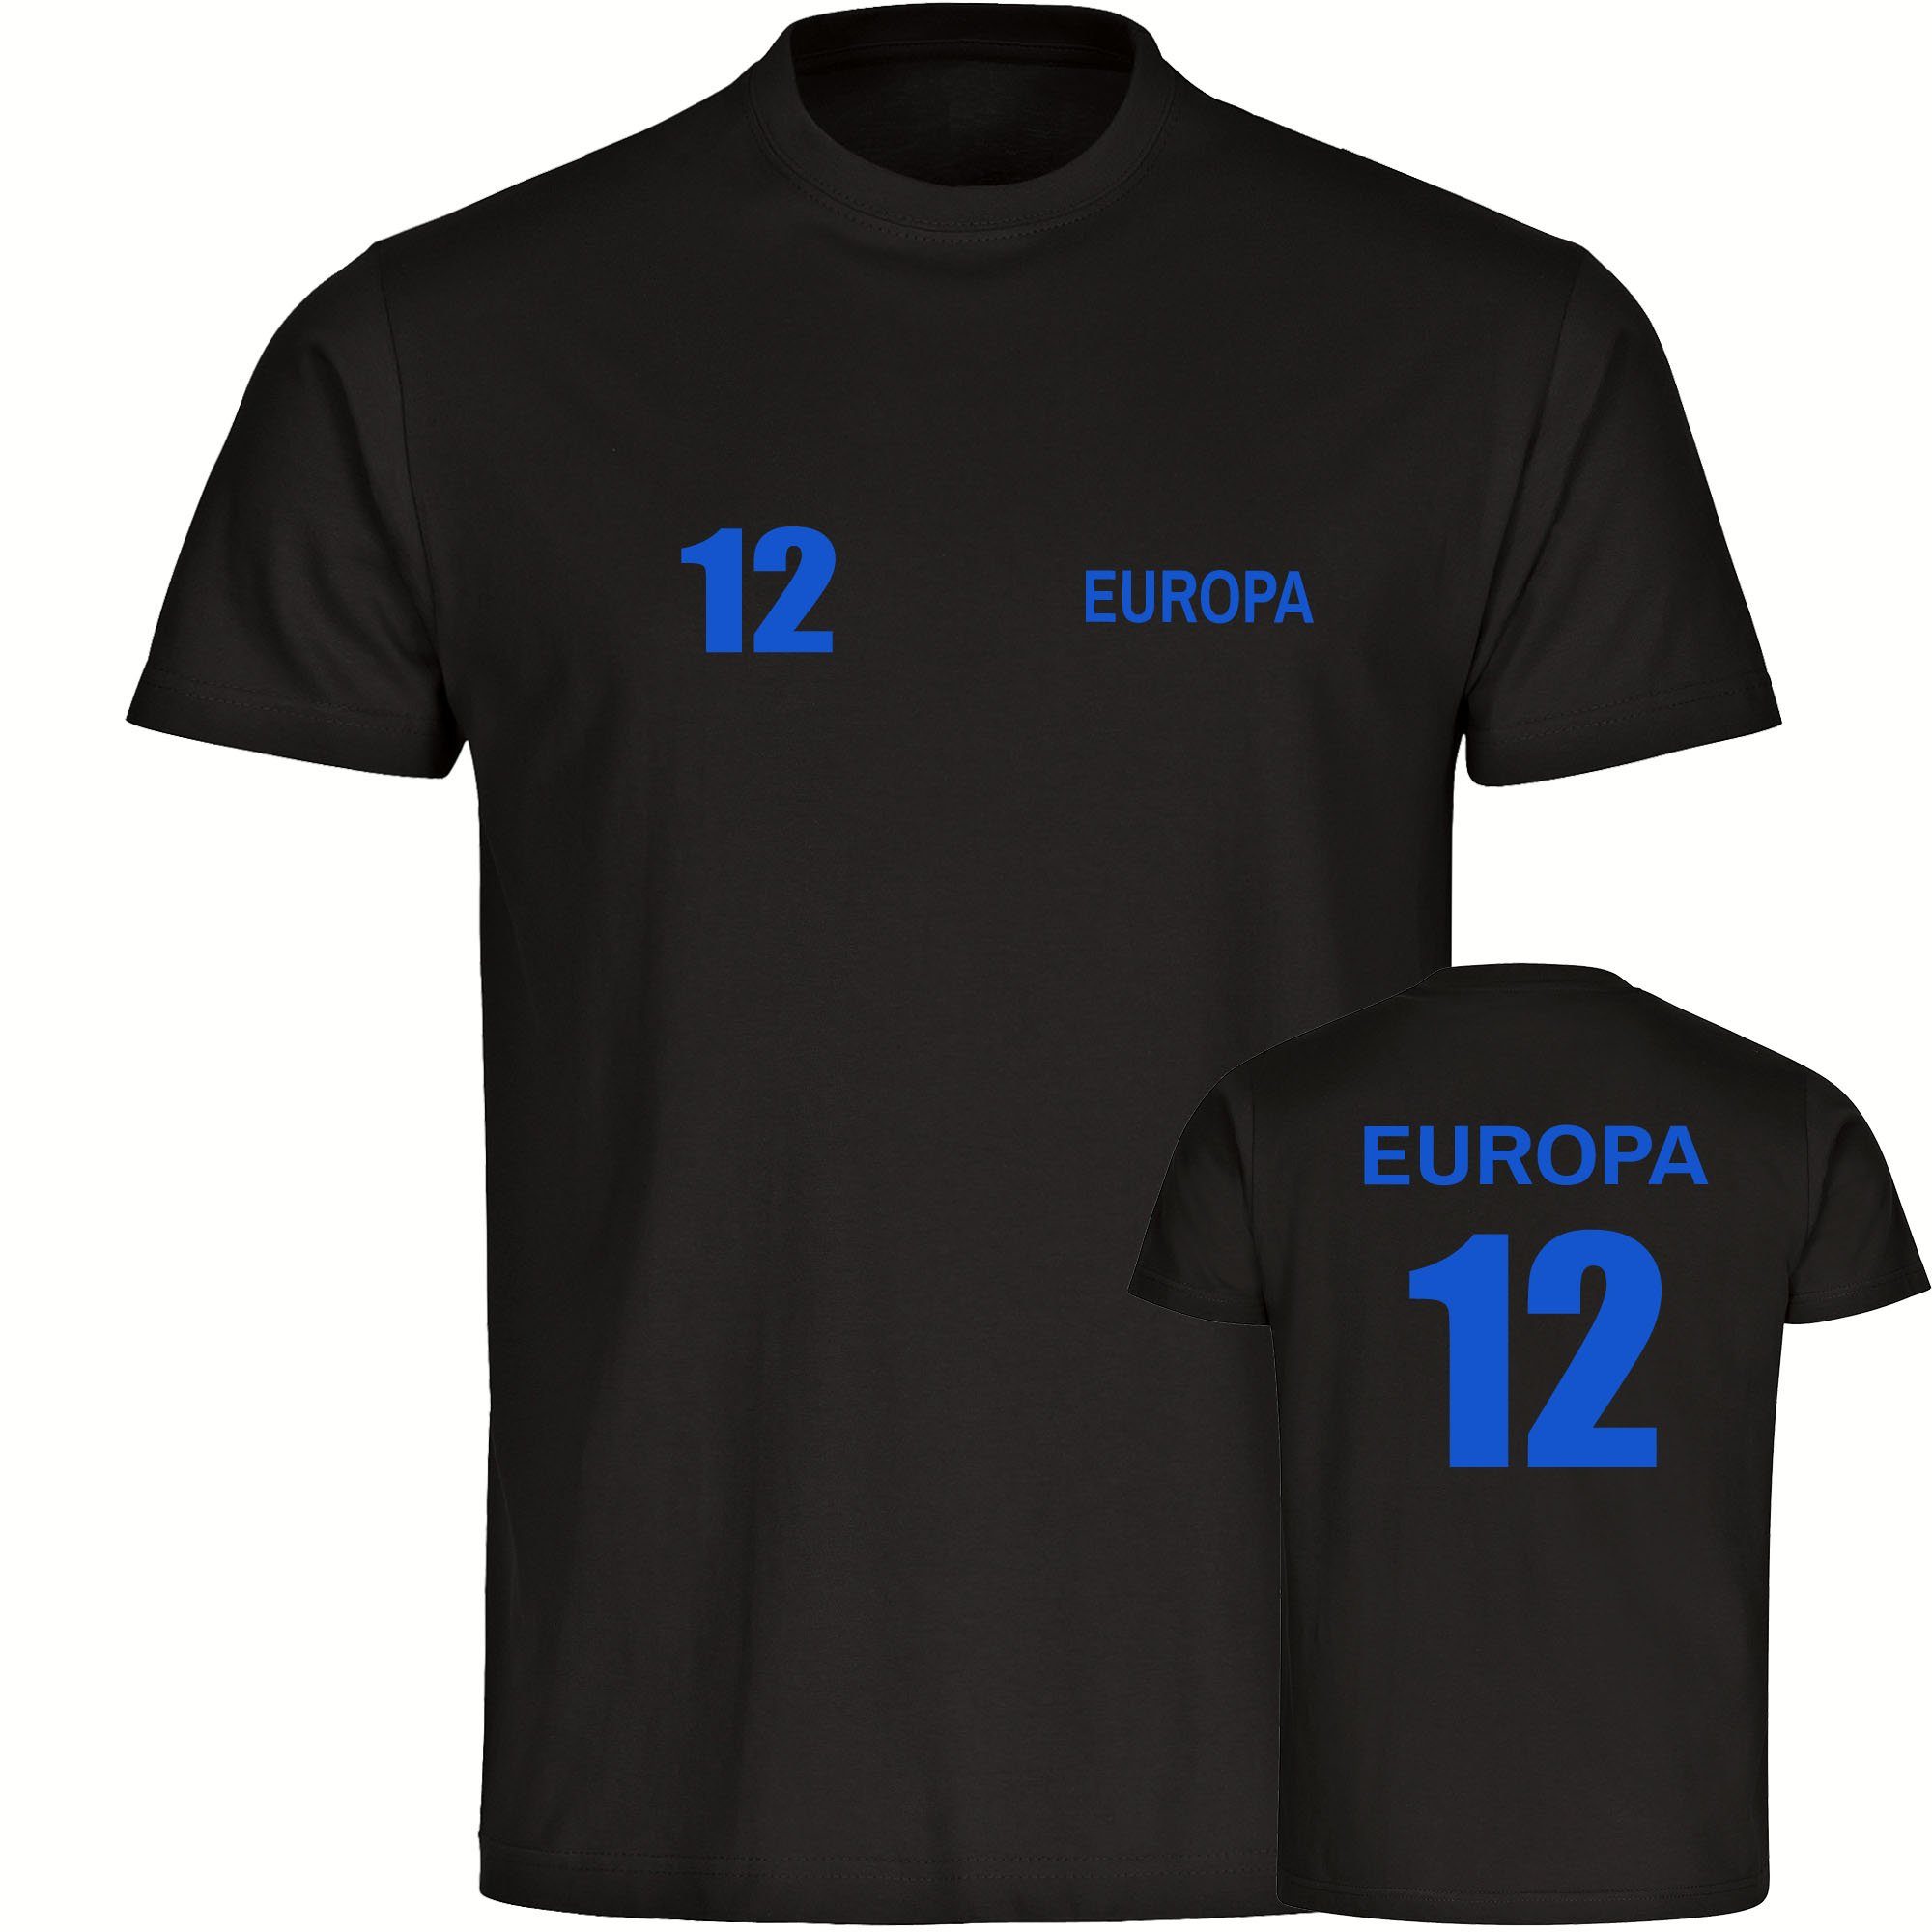 multifanshop T-Shirt Kinder Europa - Trikot 12 - Boy Girl